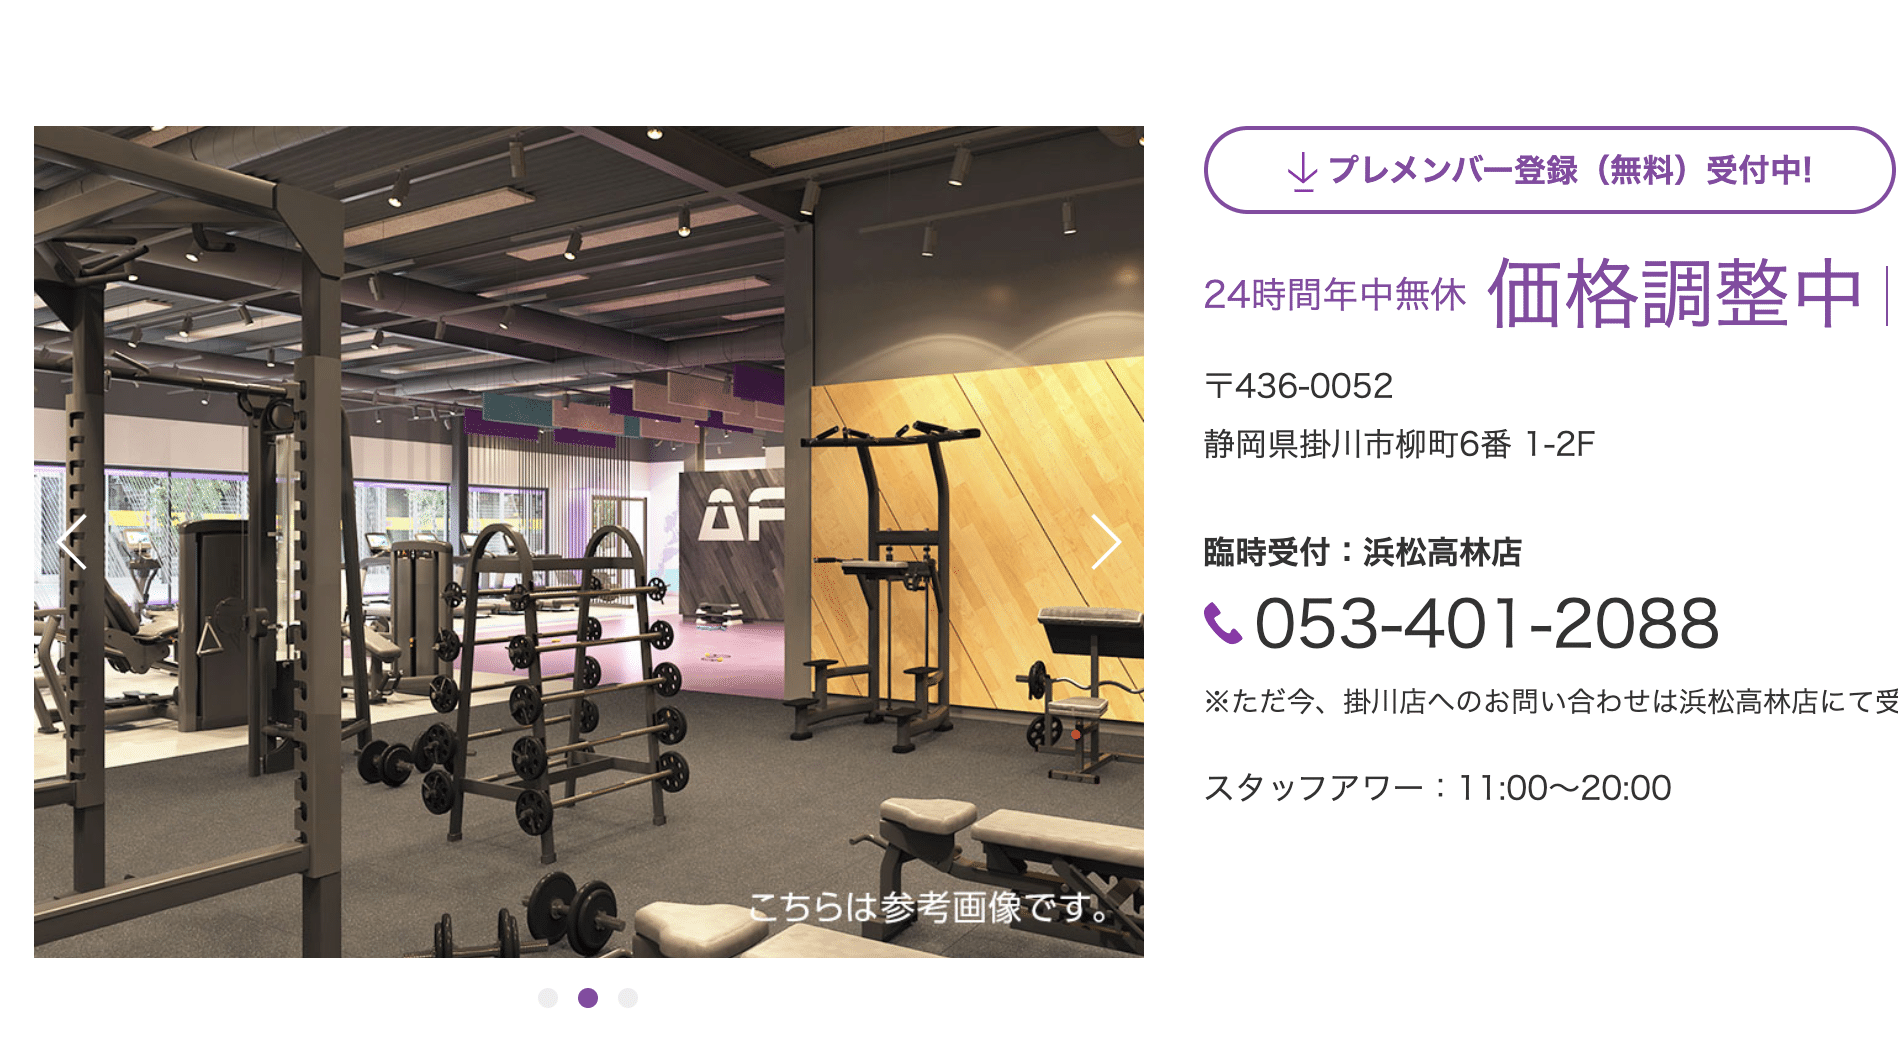 掛川の柳町に24時間のジム「Anytime Fitness」がオープンしそう？ジム増えすぎ？